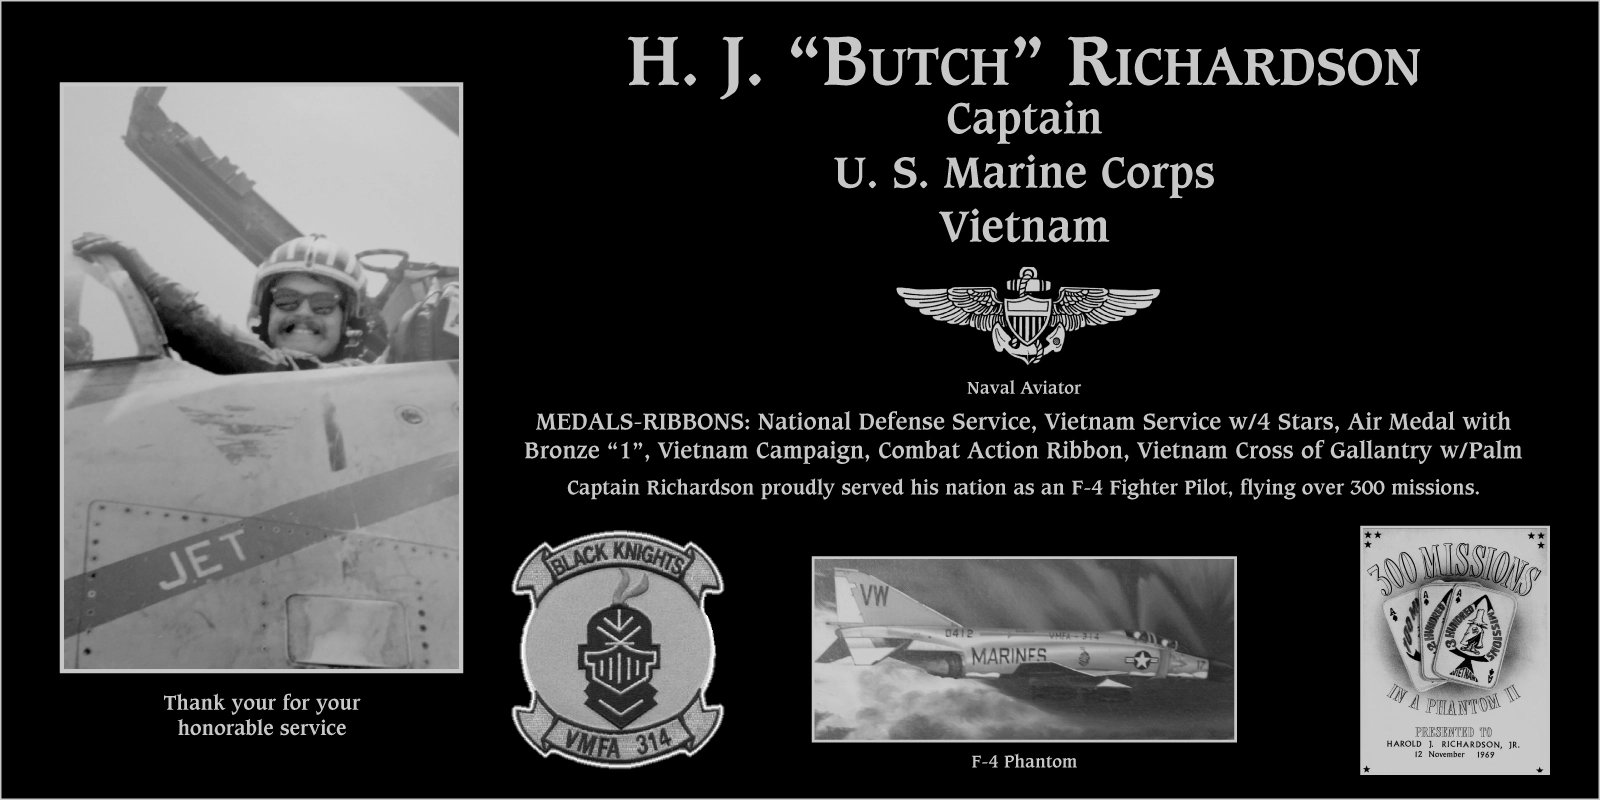 H J “Butch” Richardson